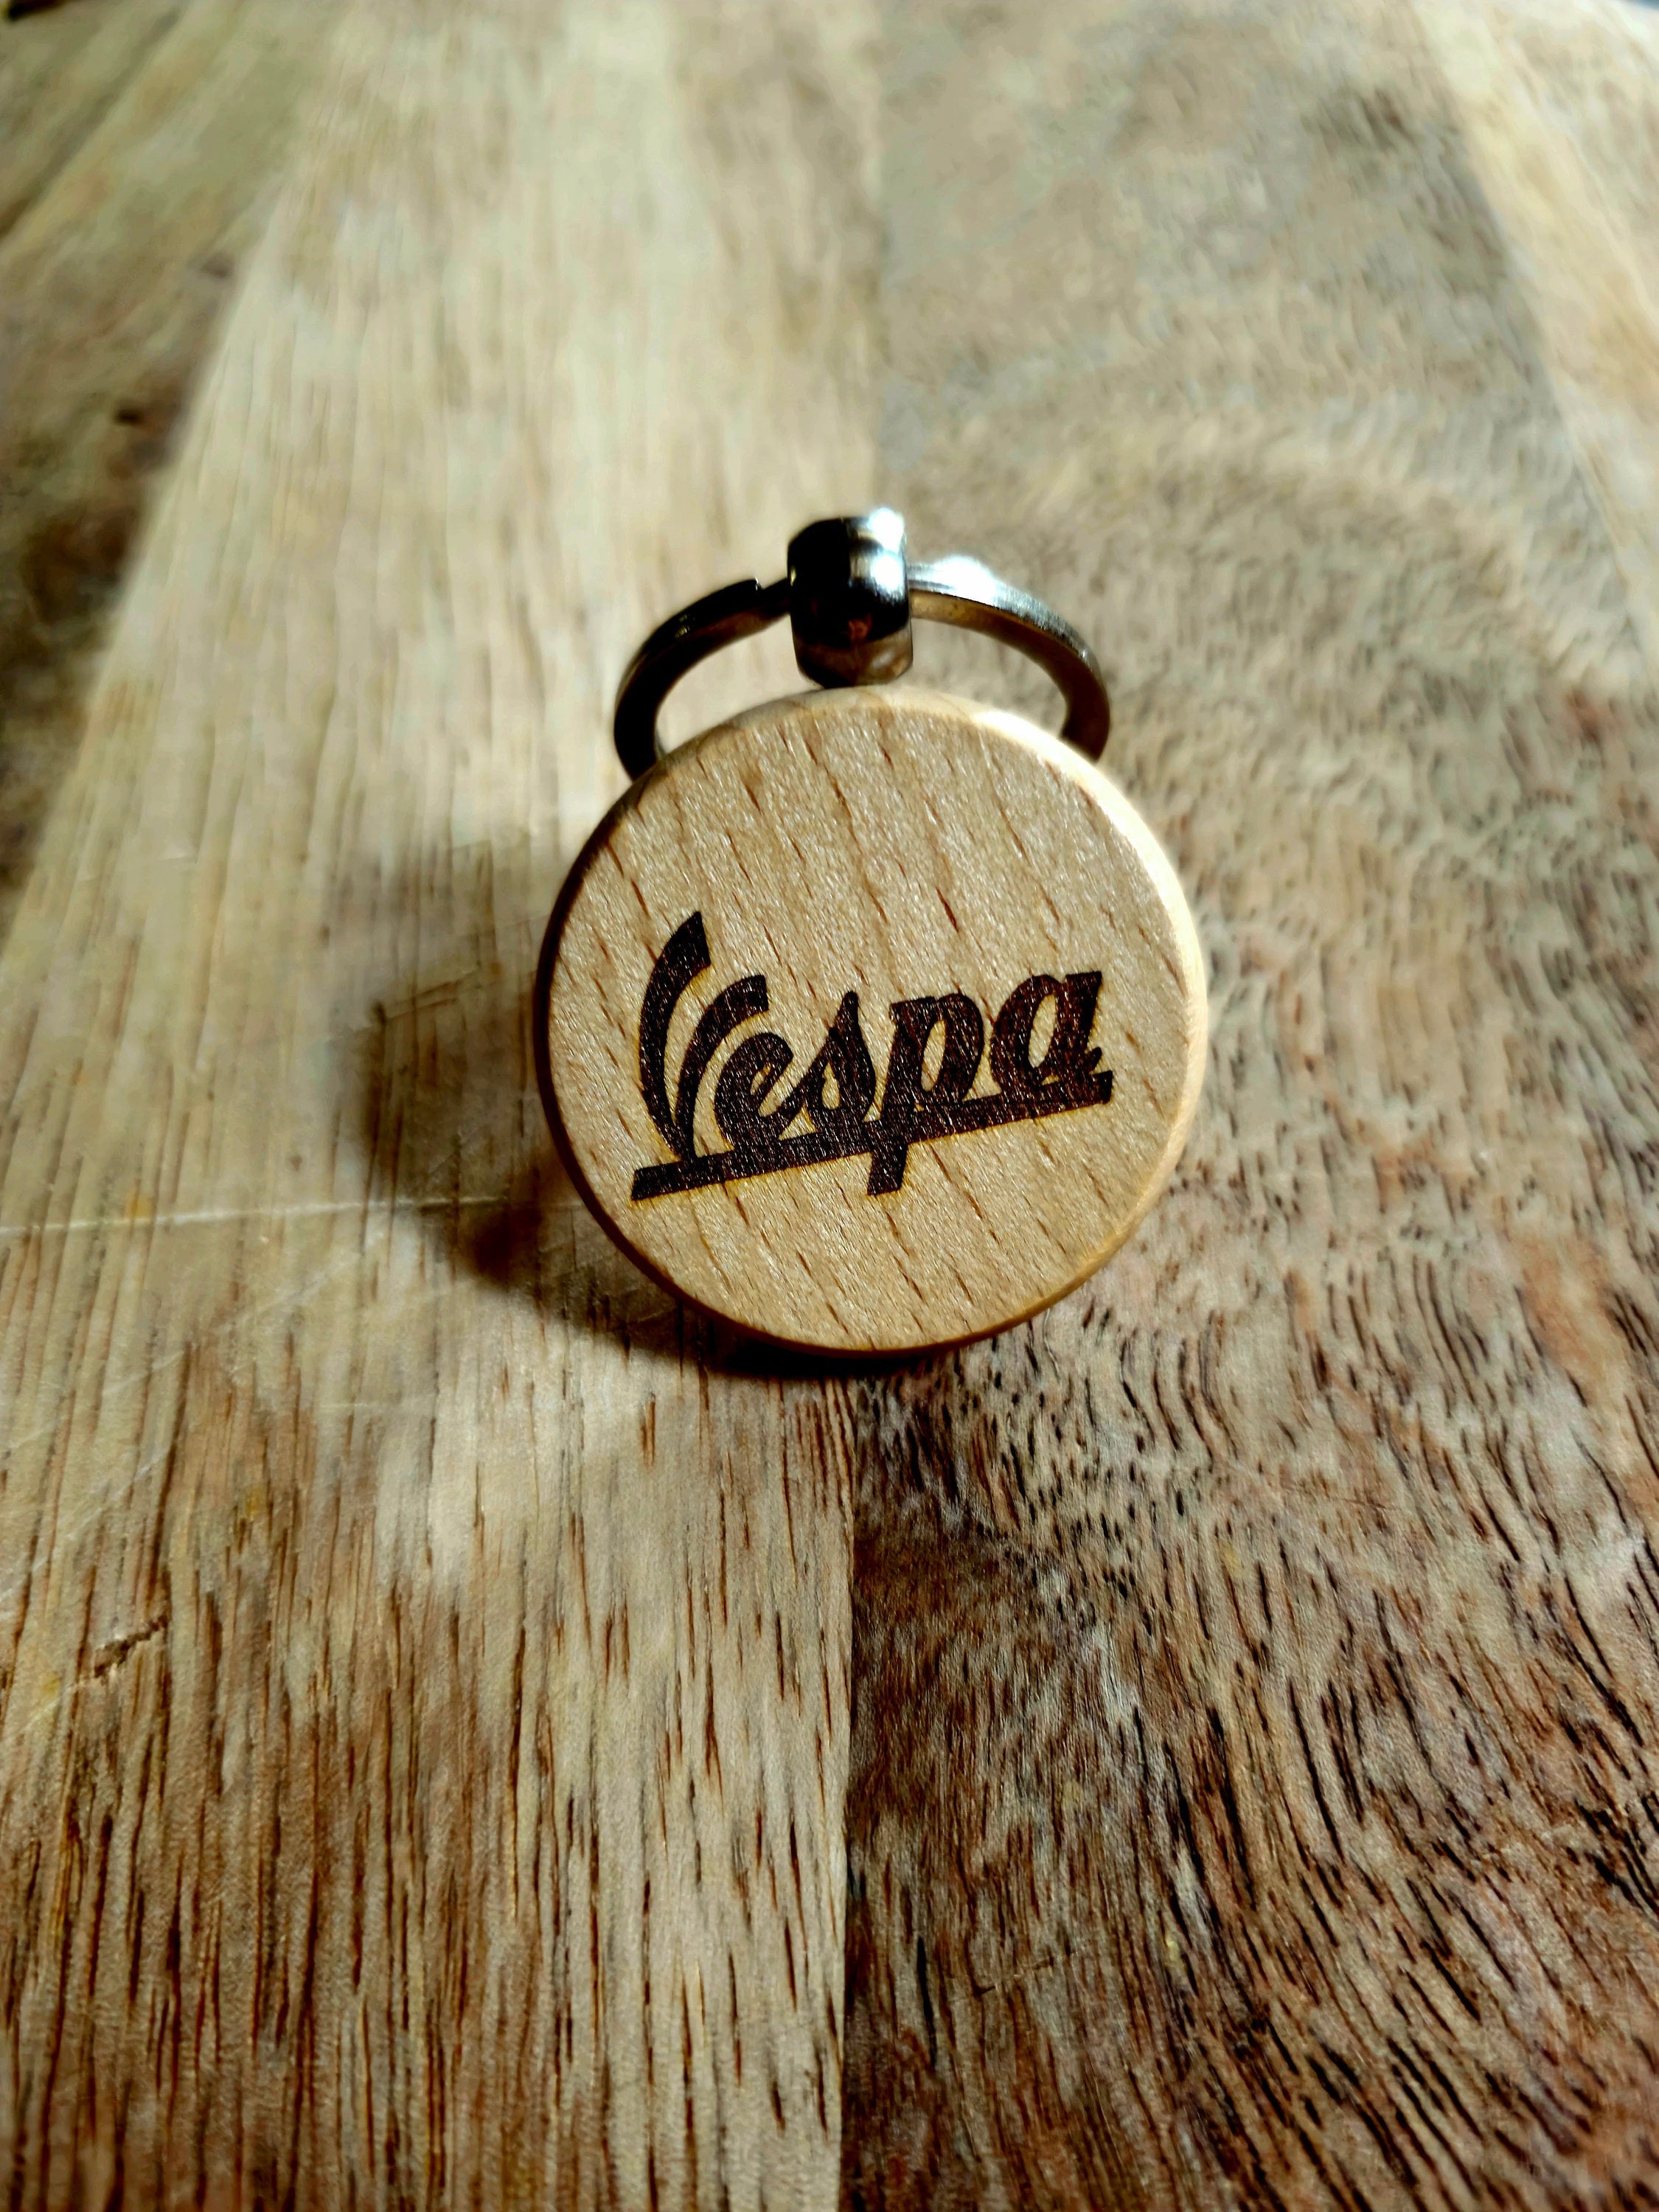 Portachiavi in legno Bud Spencer gadget Wooden keychain gift con omaggio a  sorpresa -  Italia